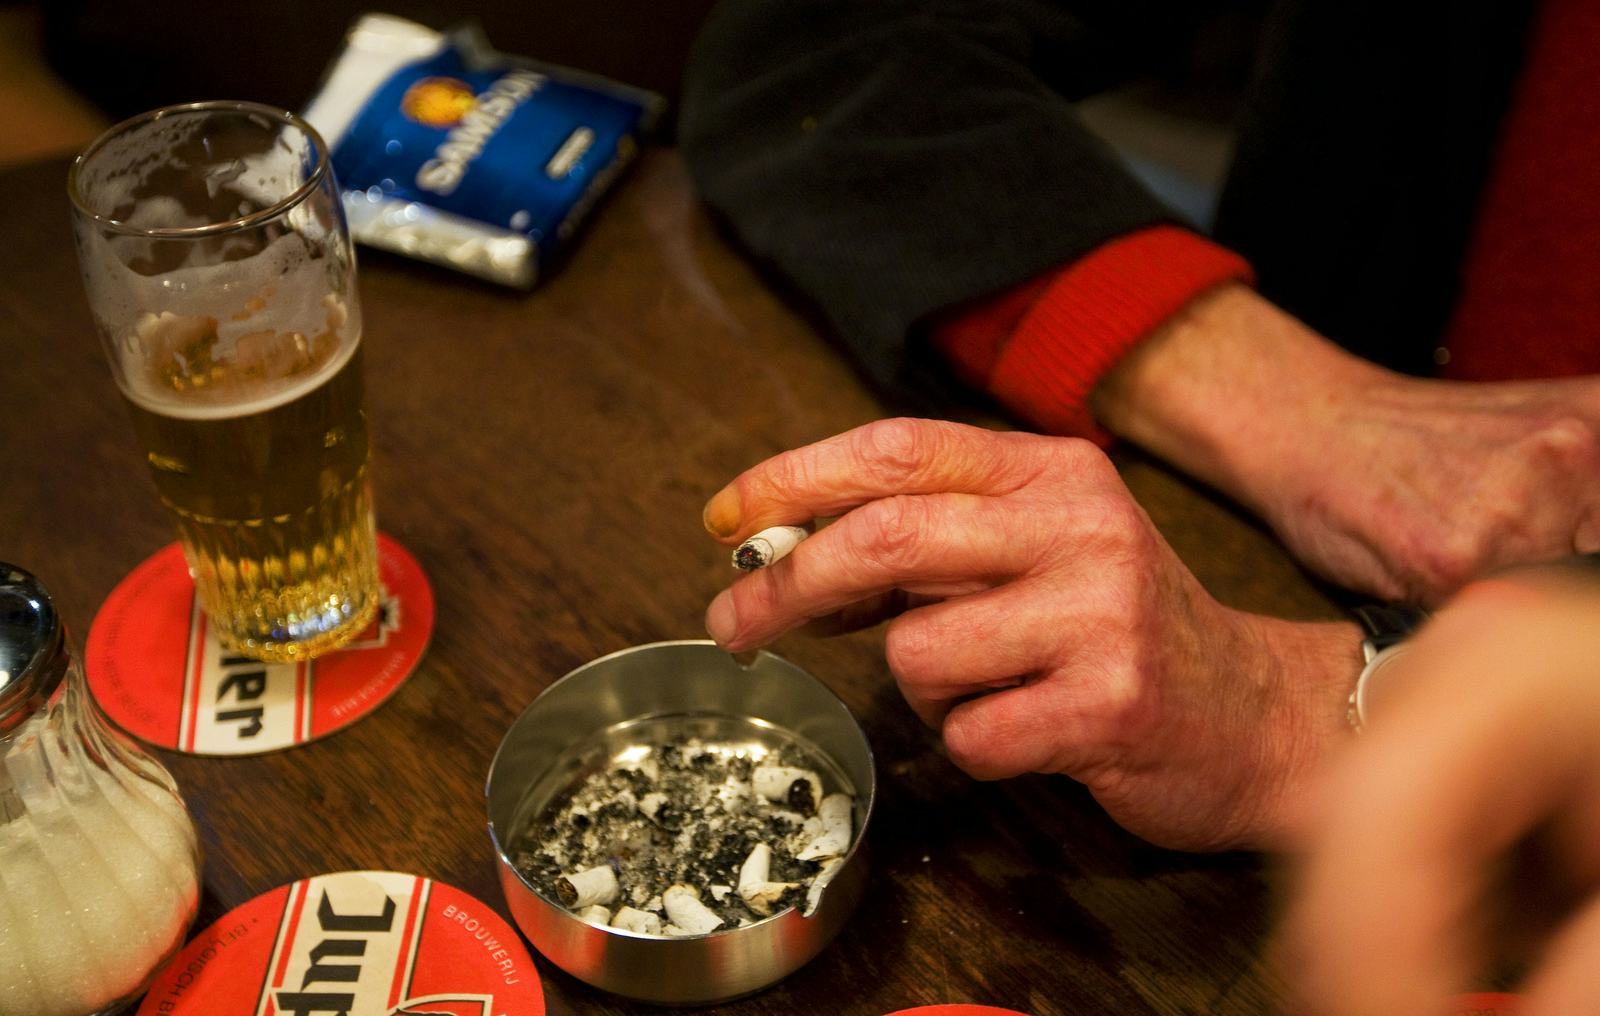 Caféondernemer Bergen op Zoom omzeilt rookverbod